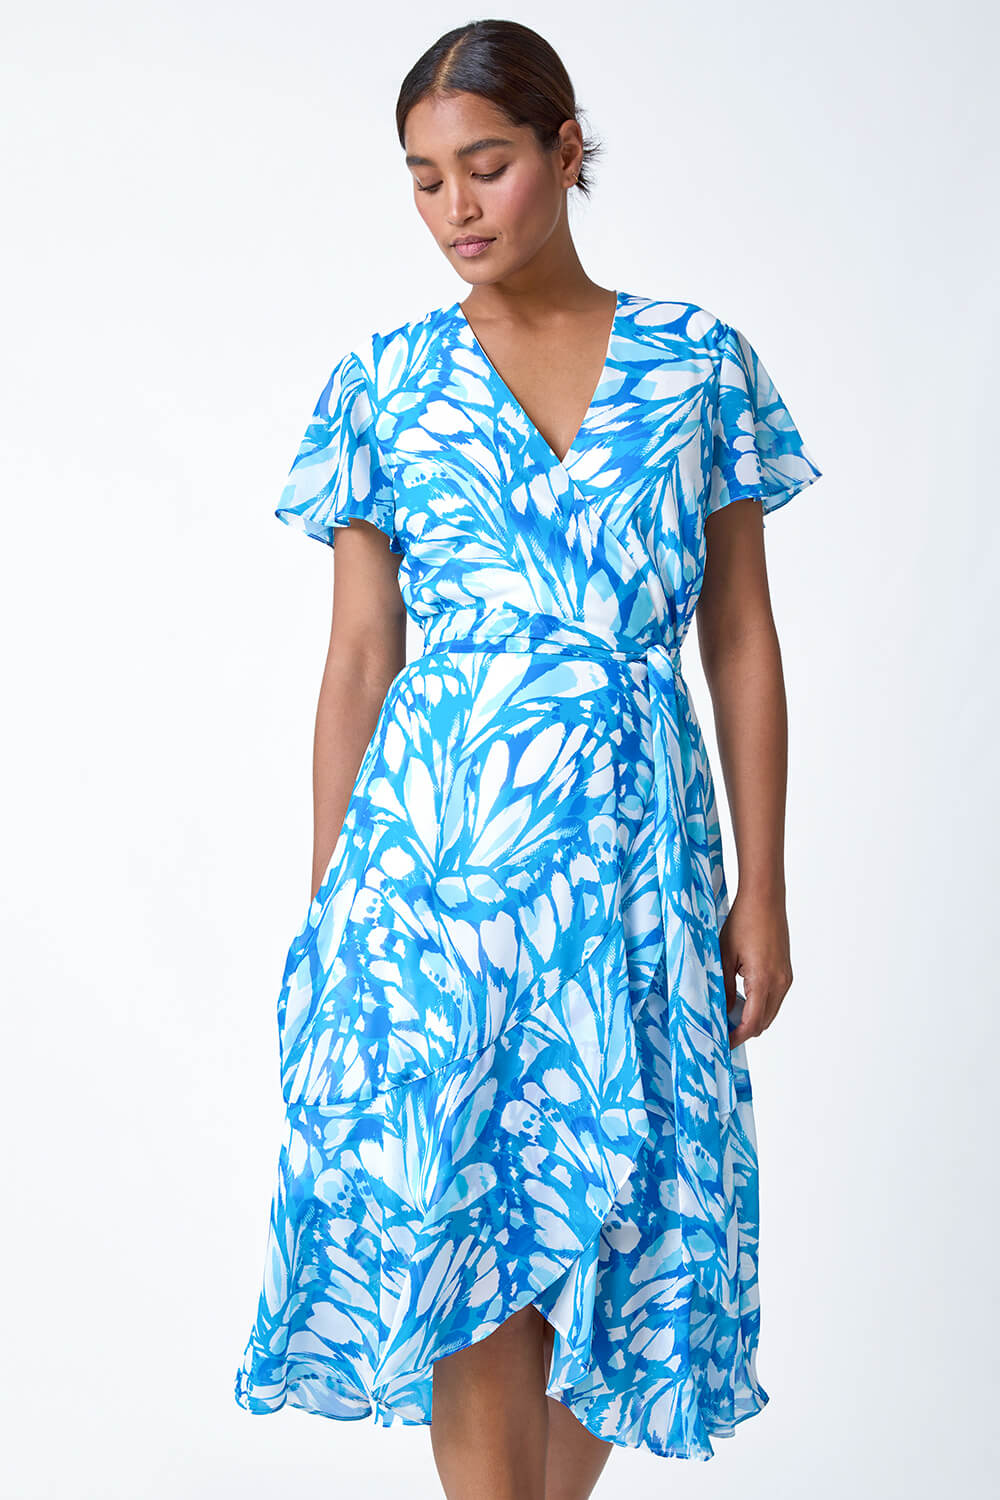 Blue Butterfly Print Chiffon Wrap Dress, Image 2 of 5